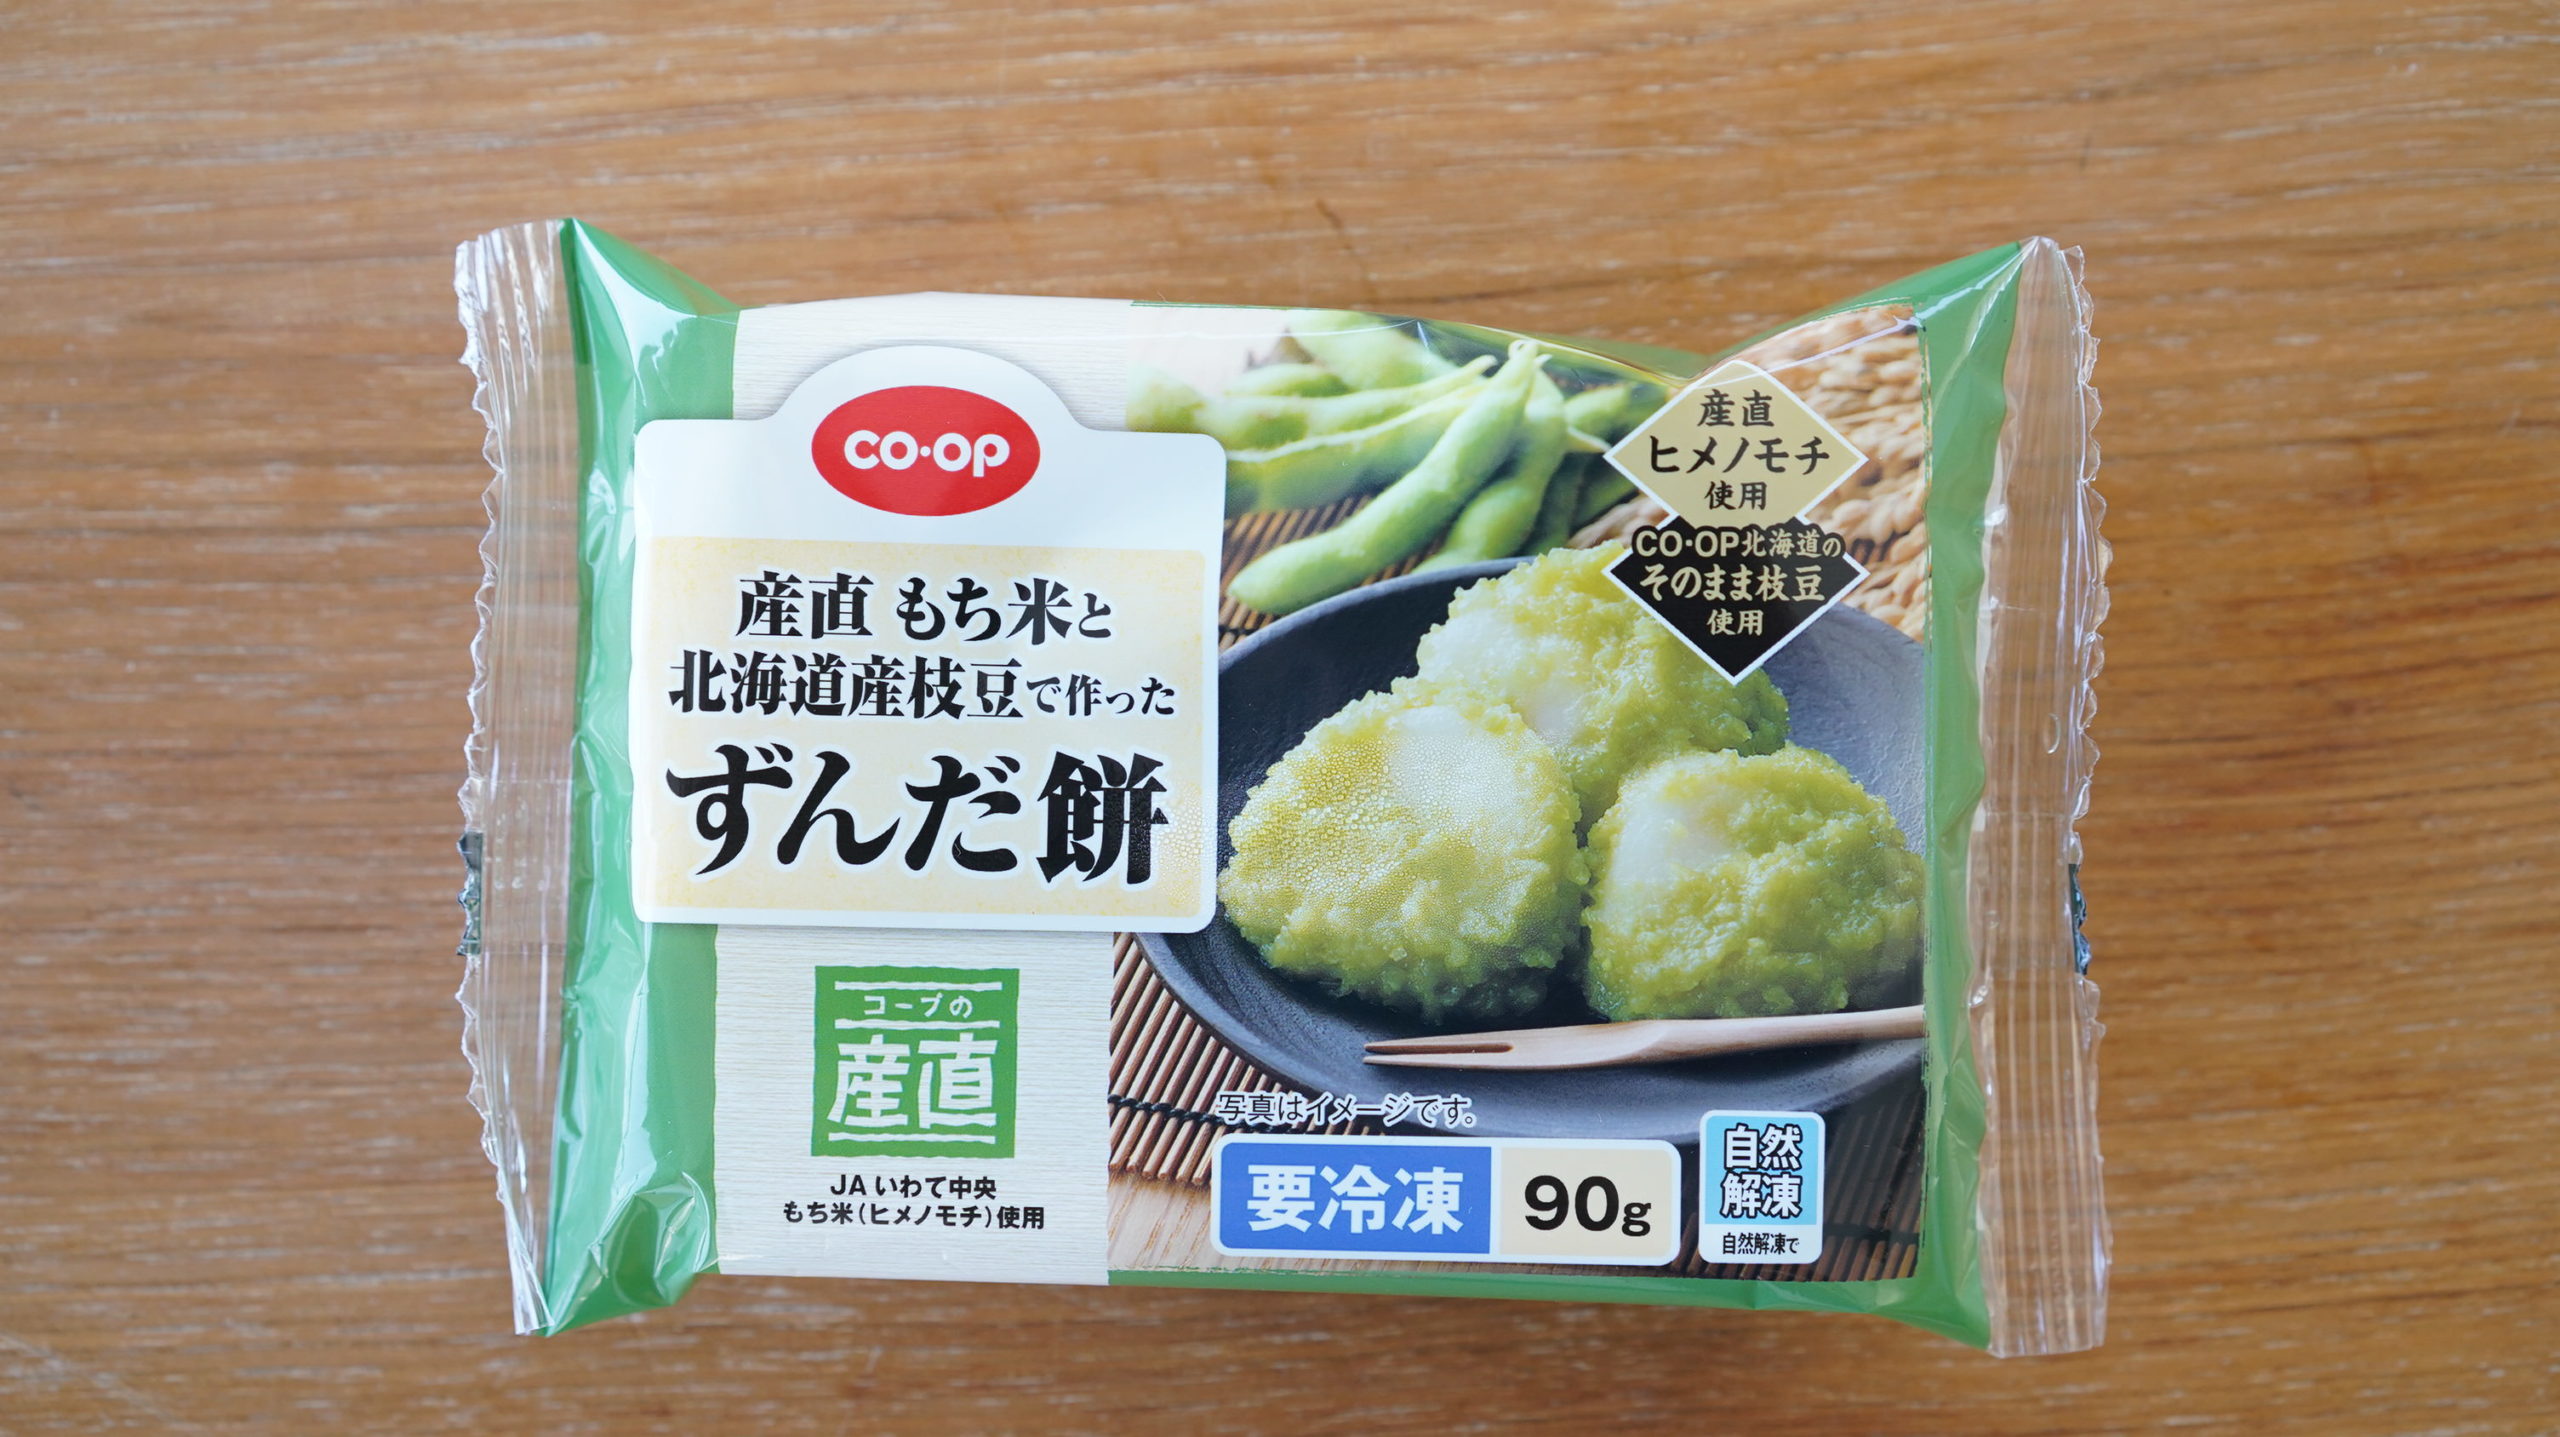 生協coop宅配の冷凍食品「産直もち米と北海道産枝豆で作ったずんだ餅」のパッケージ写真